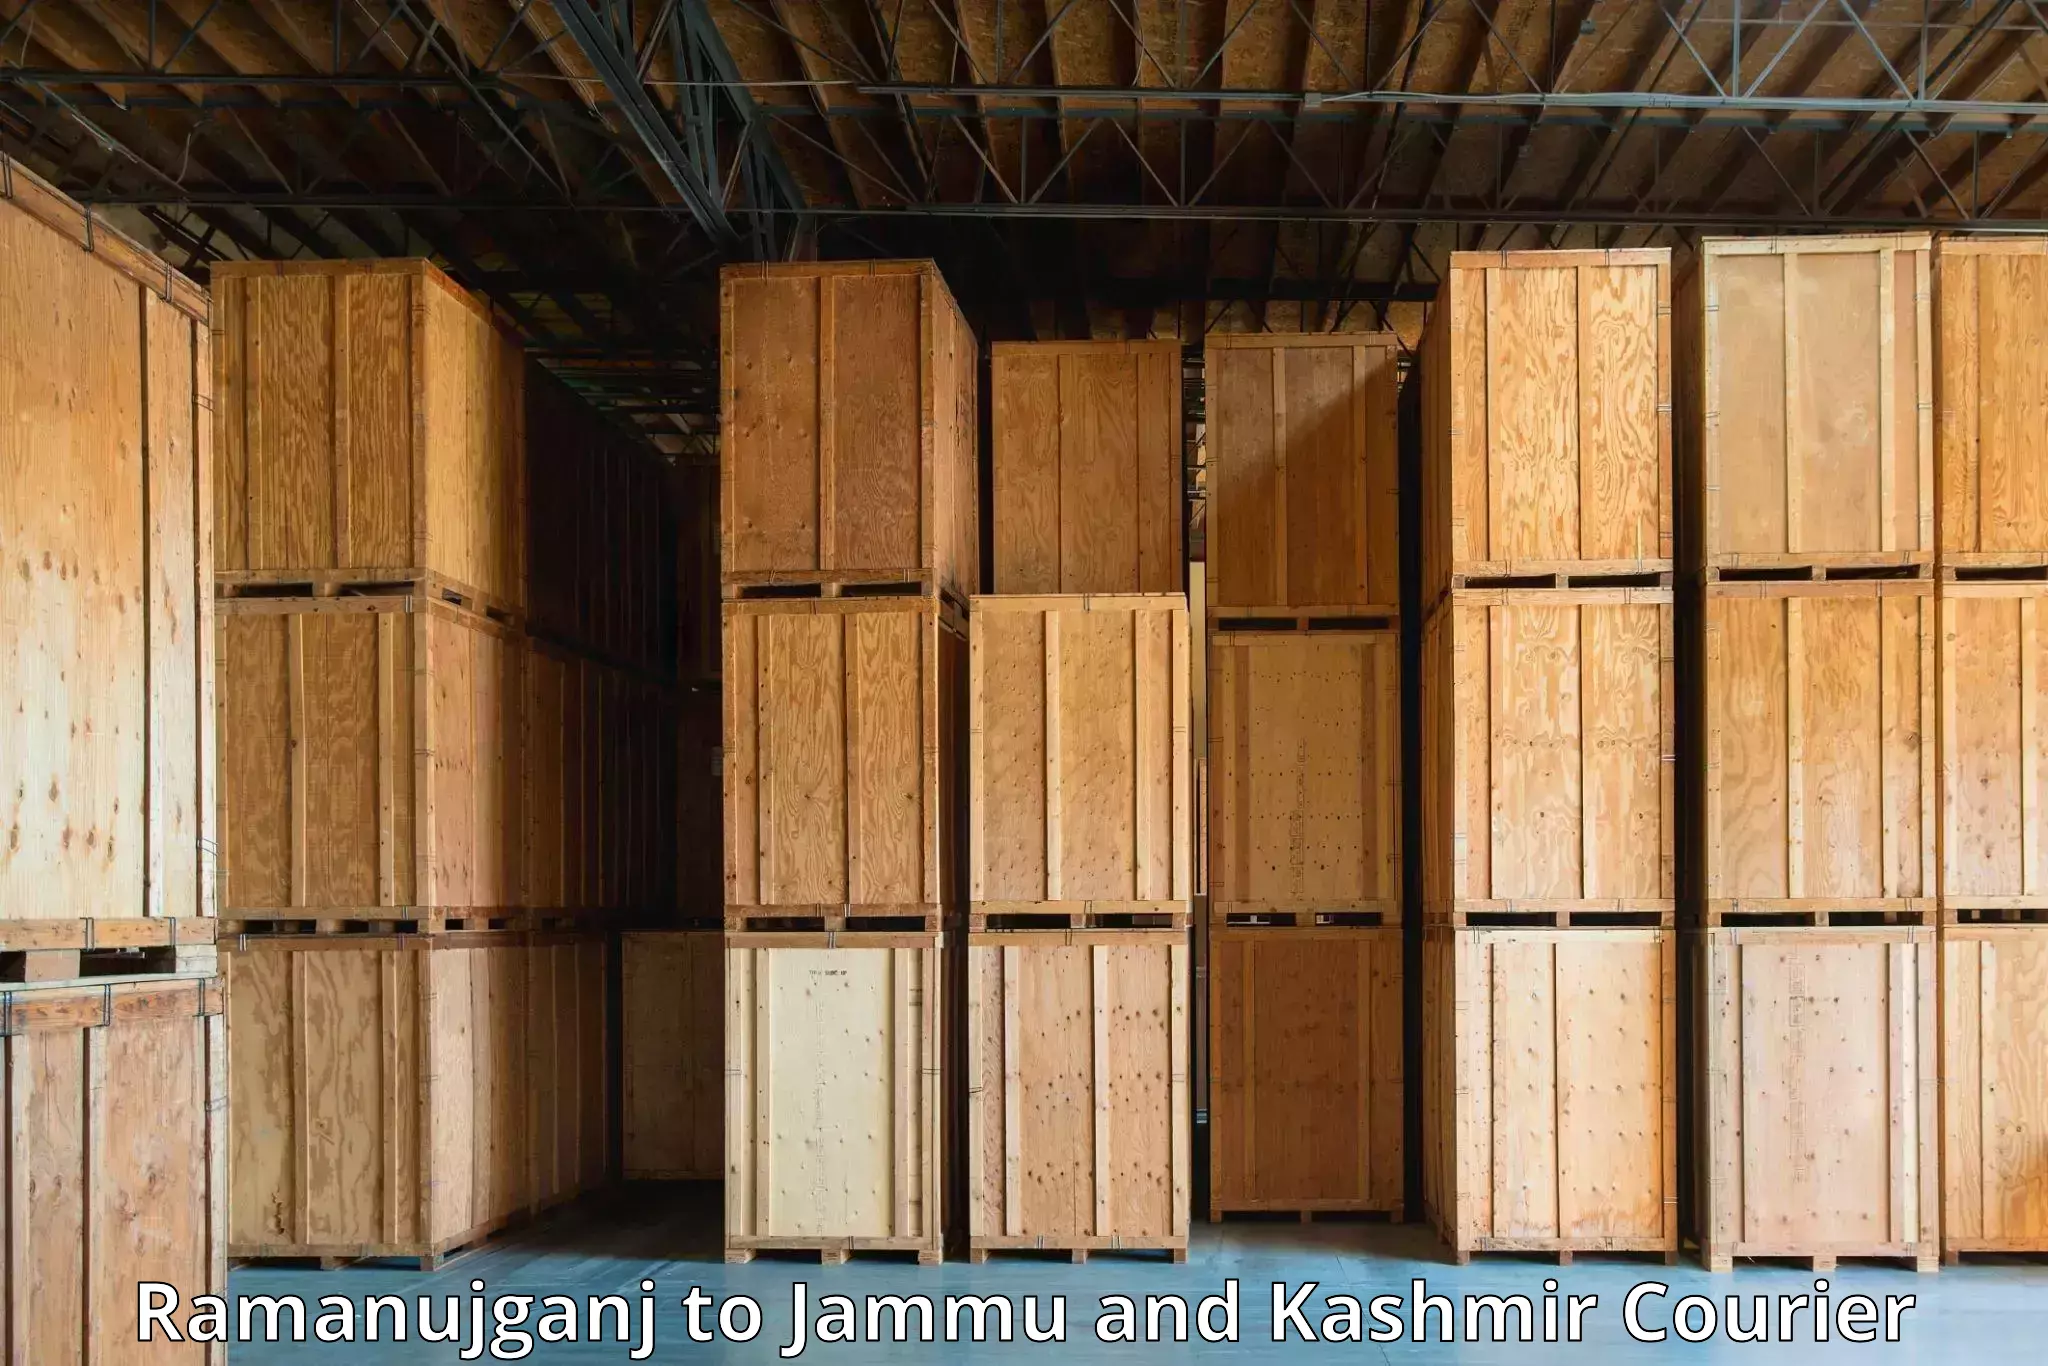 High-speed parcel service Ramanujganj to Jammu and Kashmir